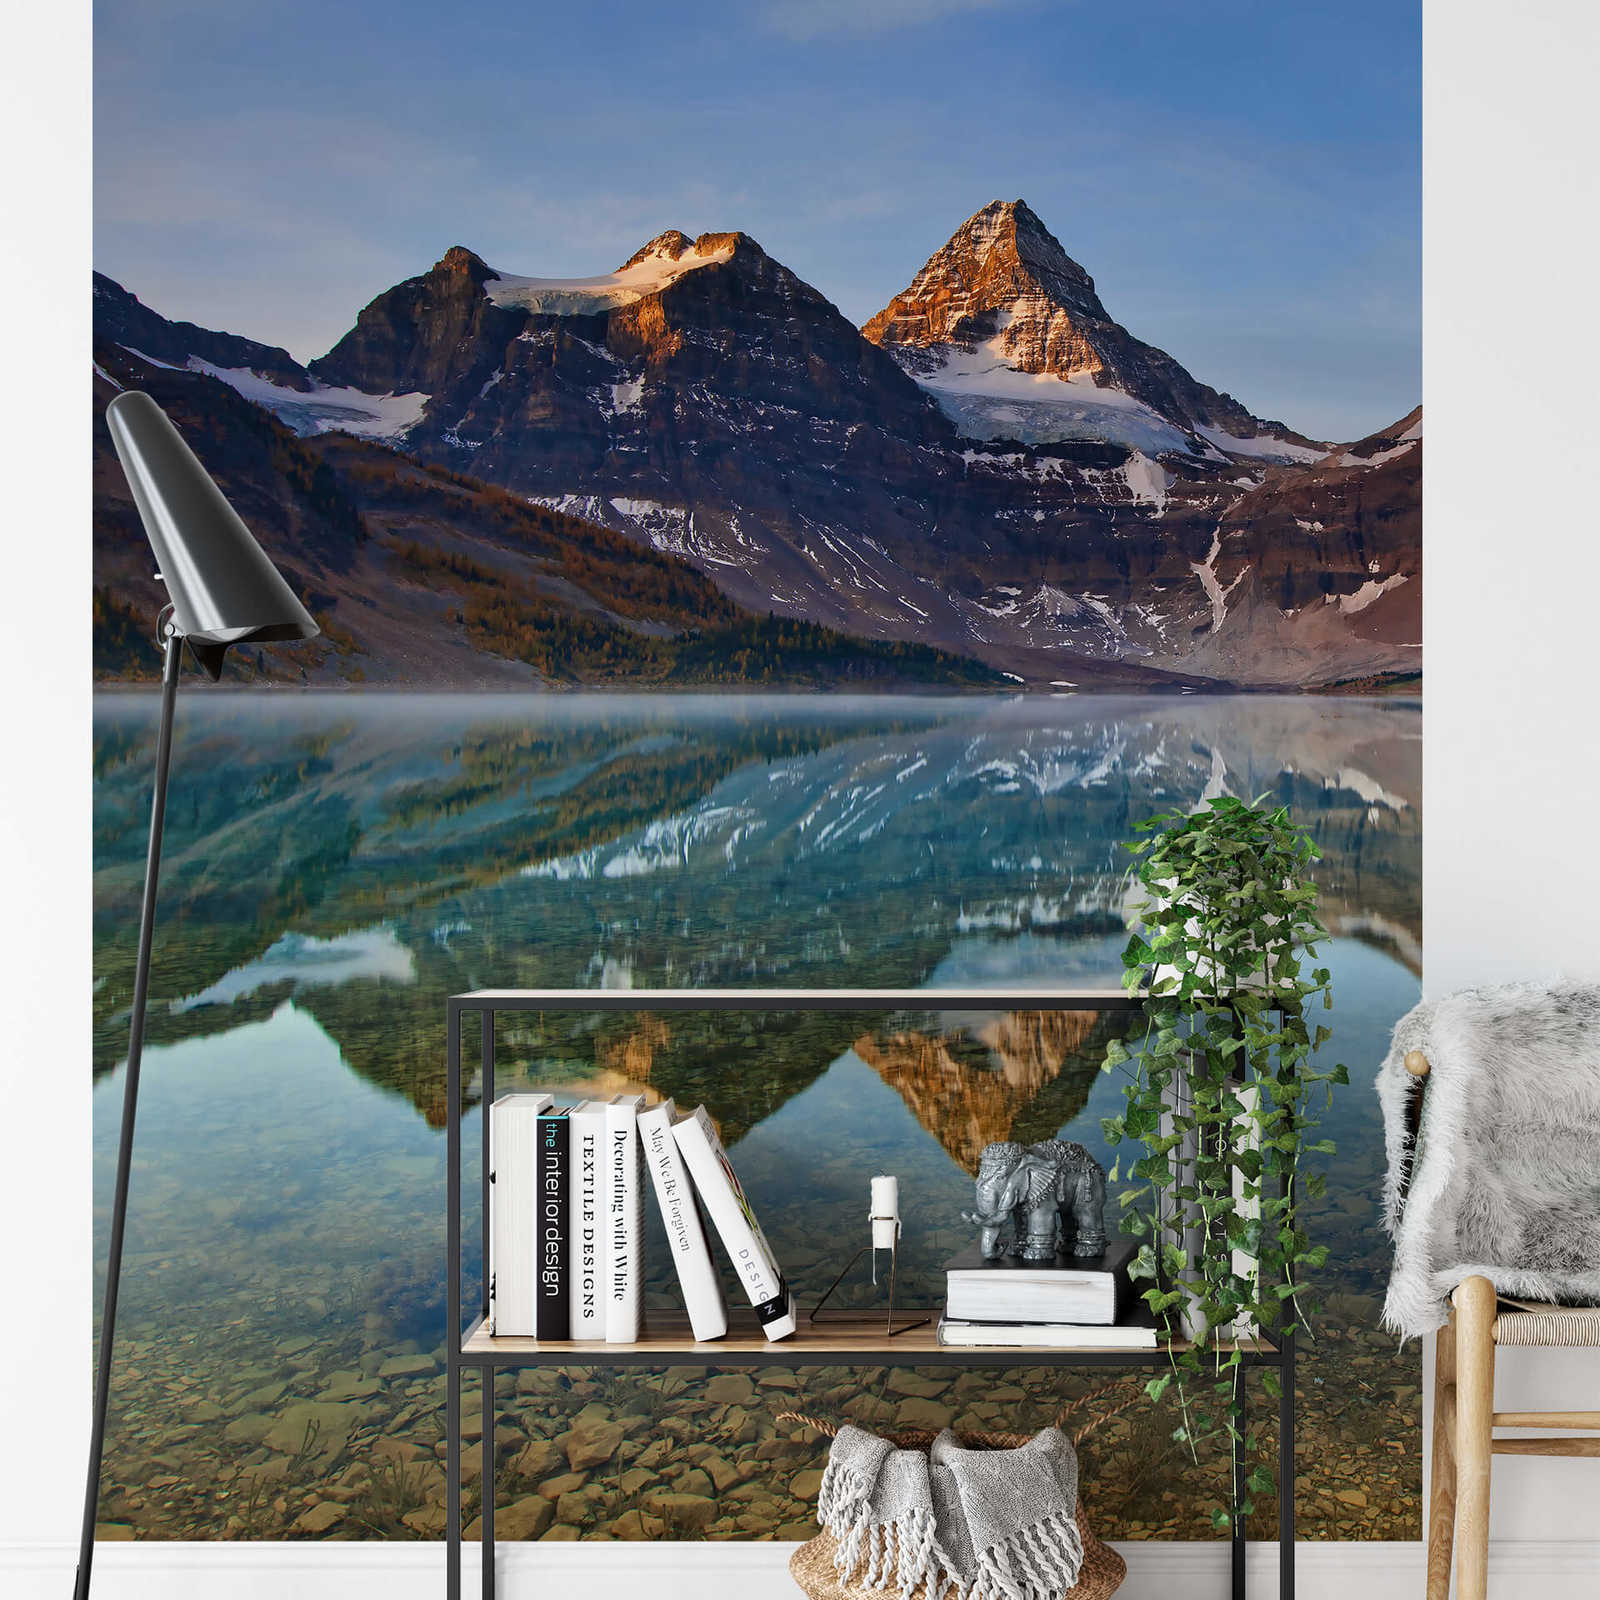             Papel pintado Lago y montañas en Canadá - Marrón, azul, blanco
        